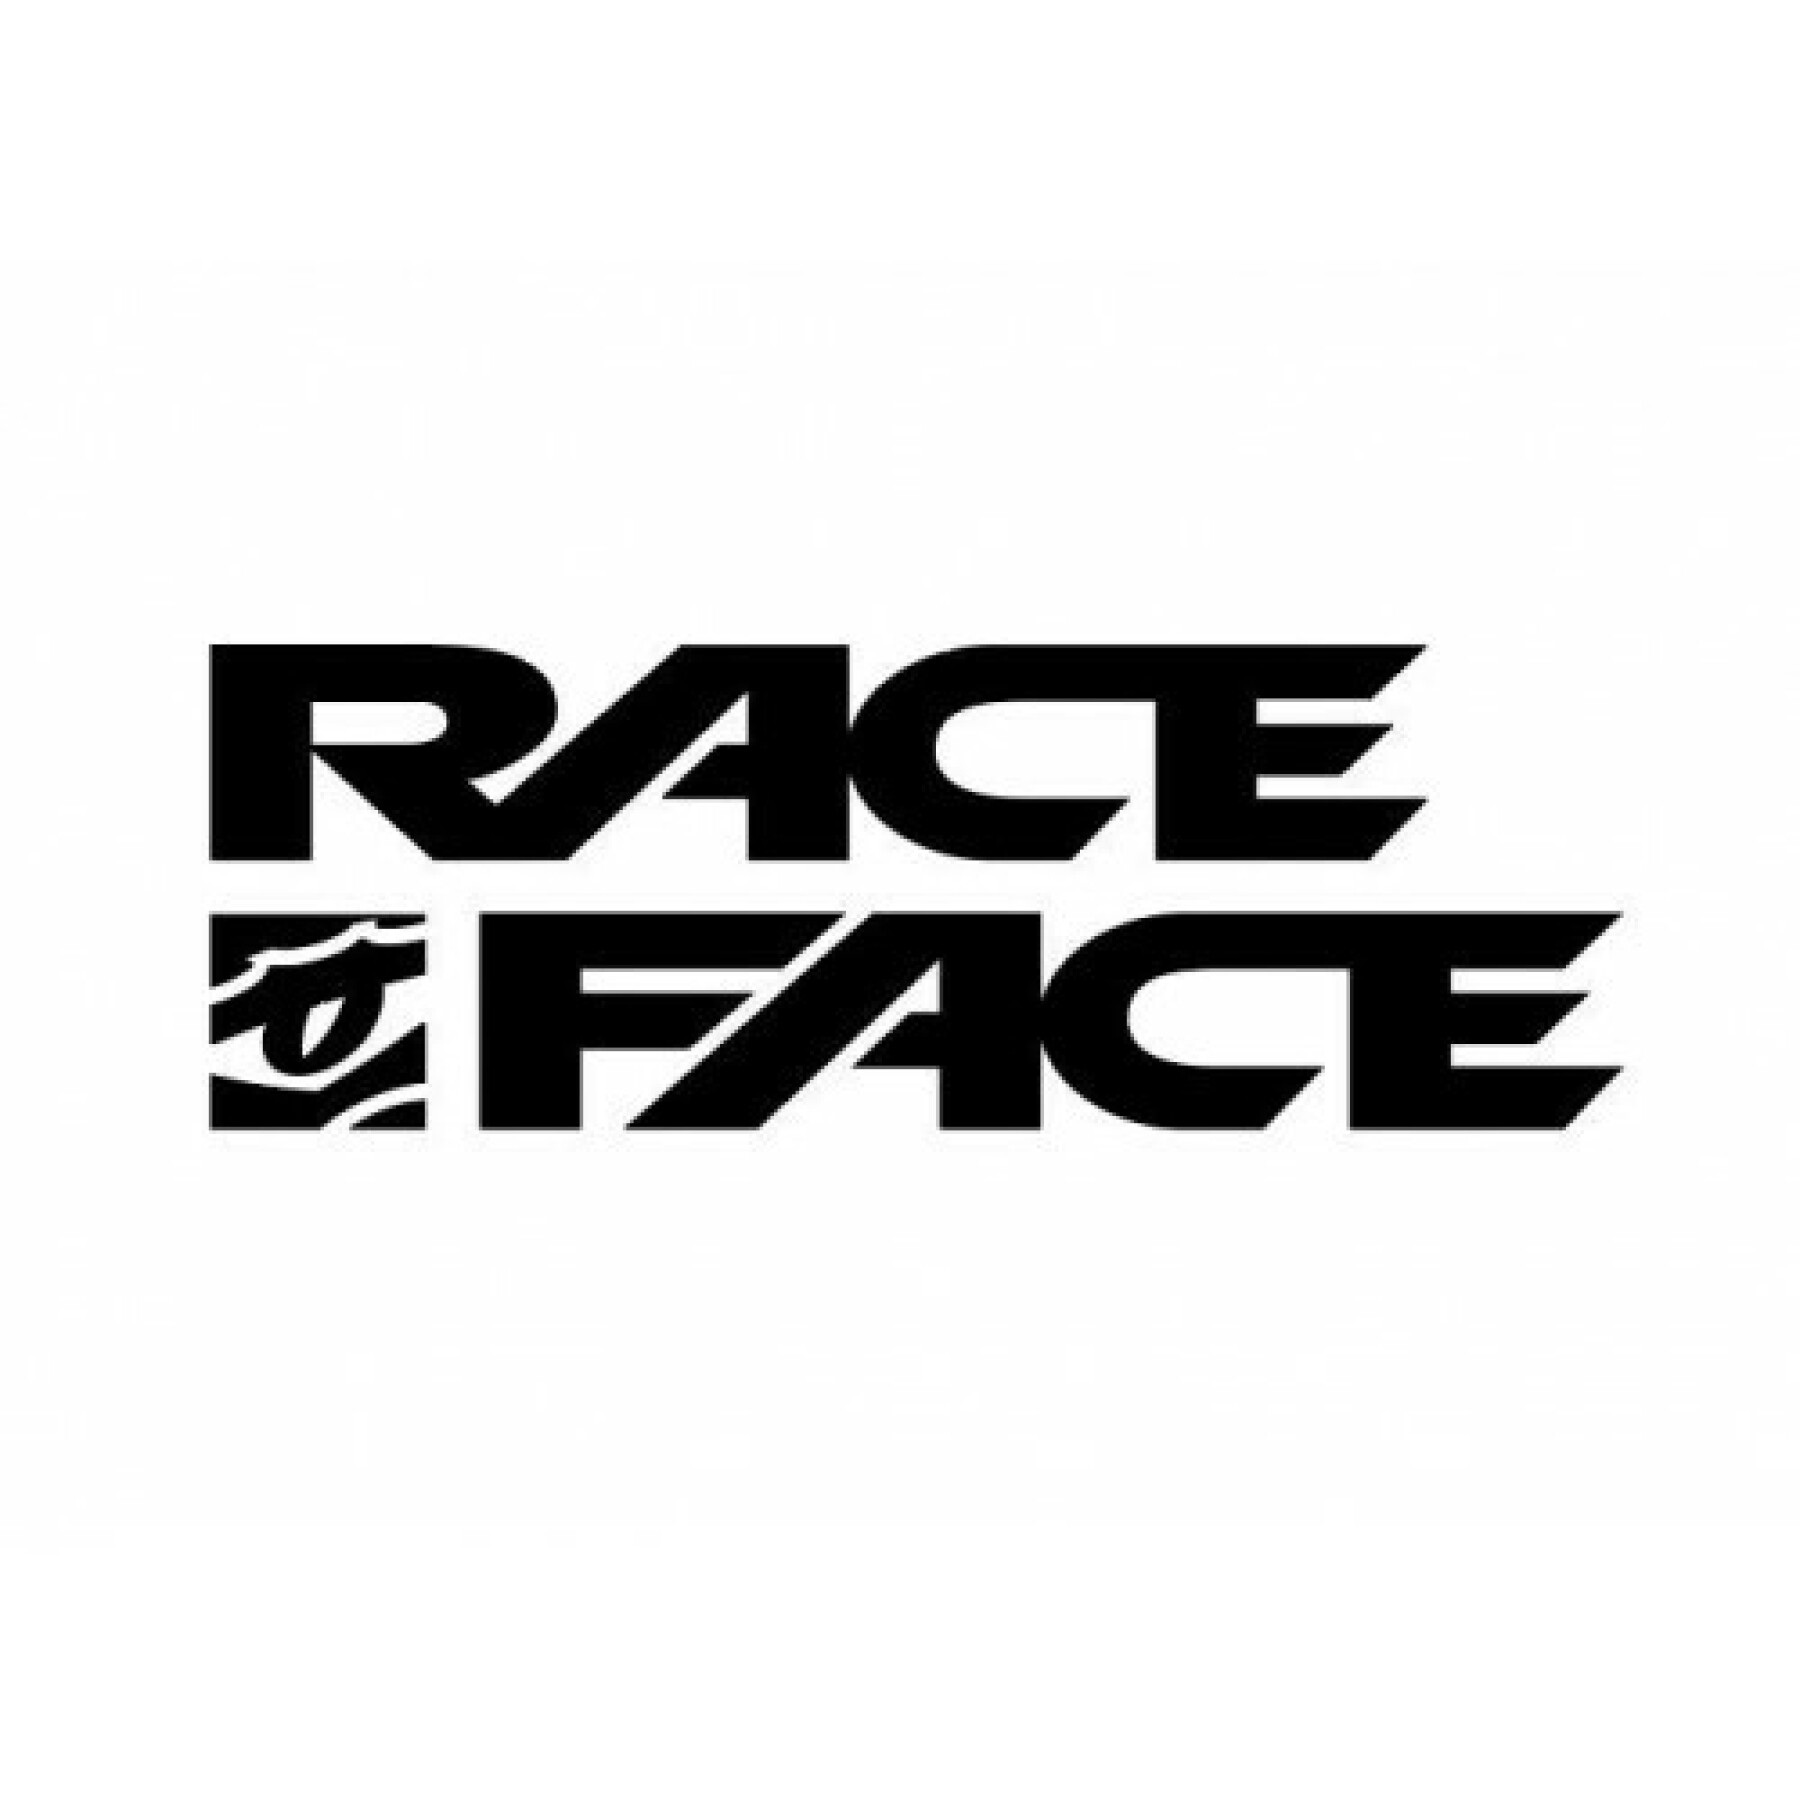 Rim Race Face arc offset - 30 - 27.5 - 32t